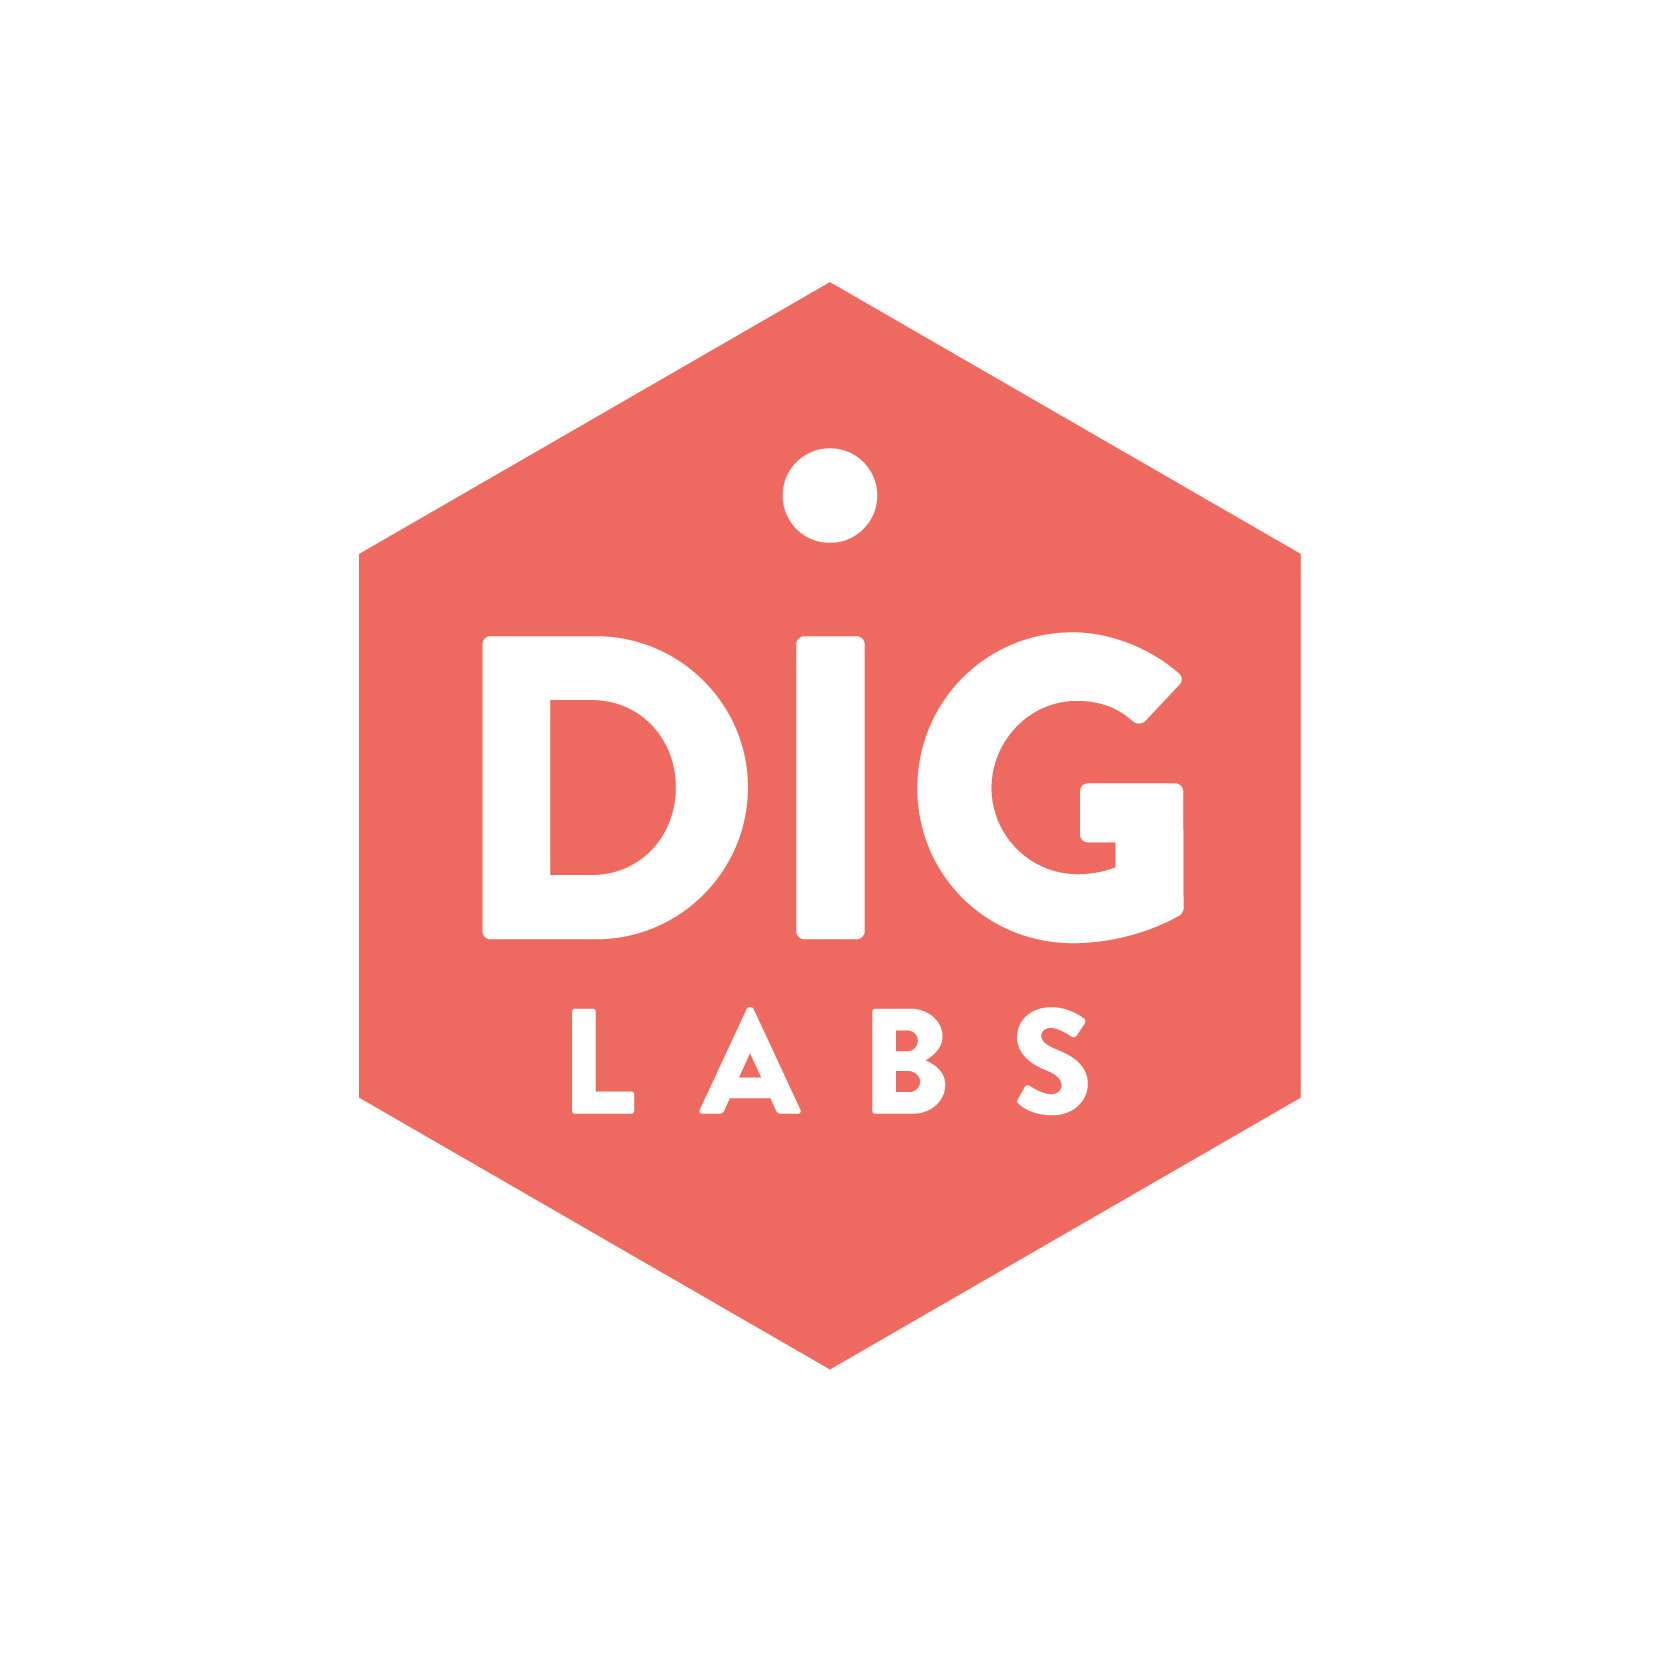 Dig Labs